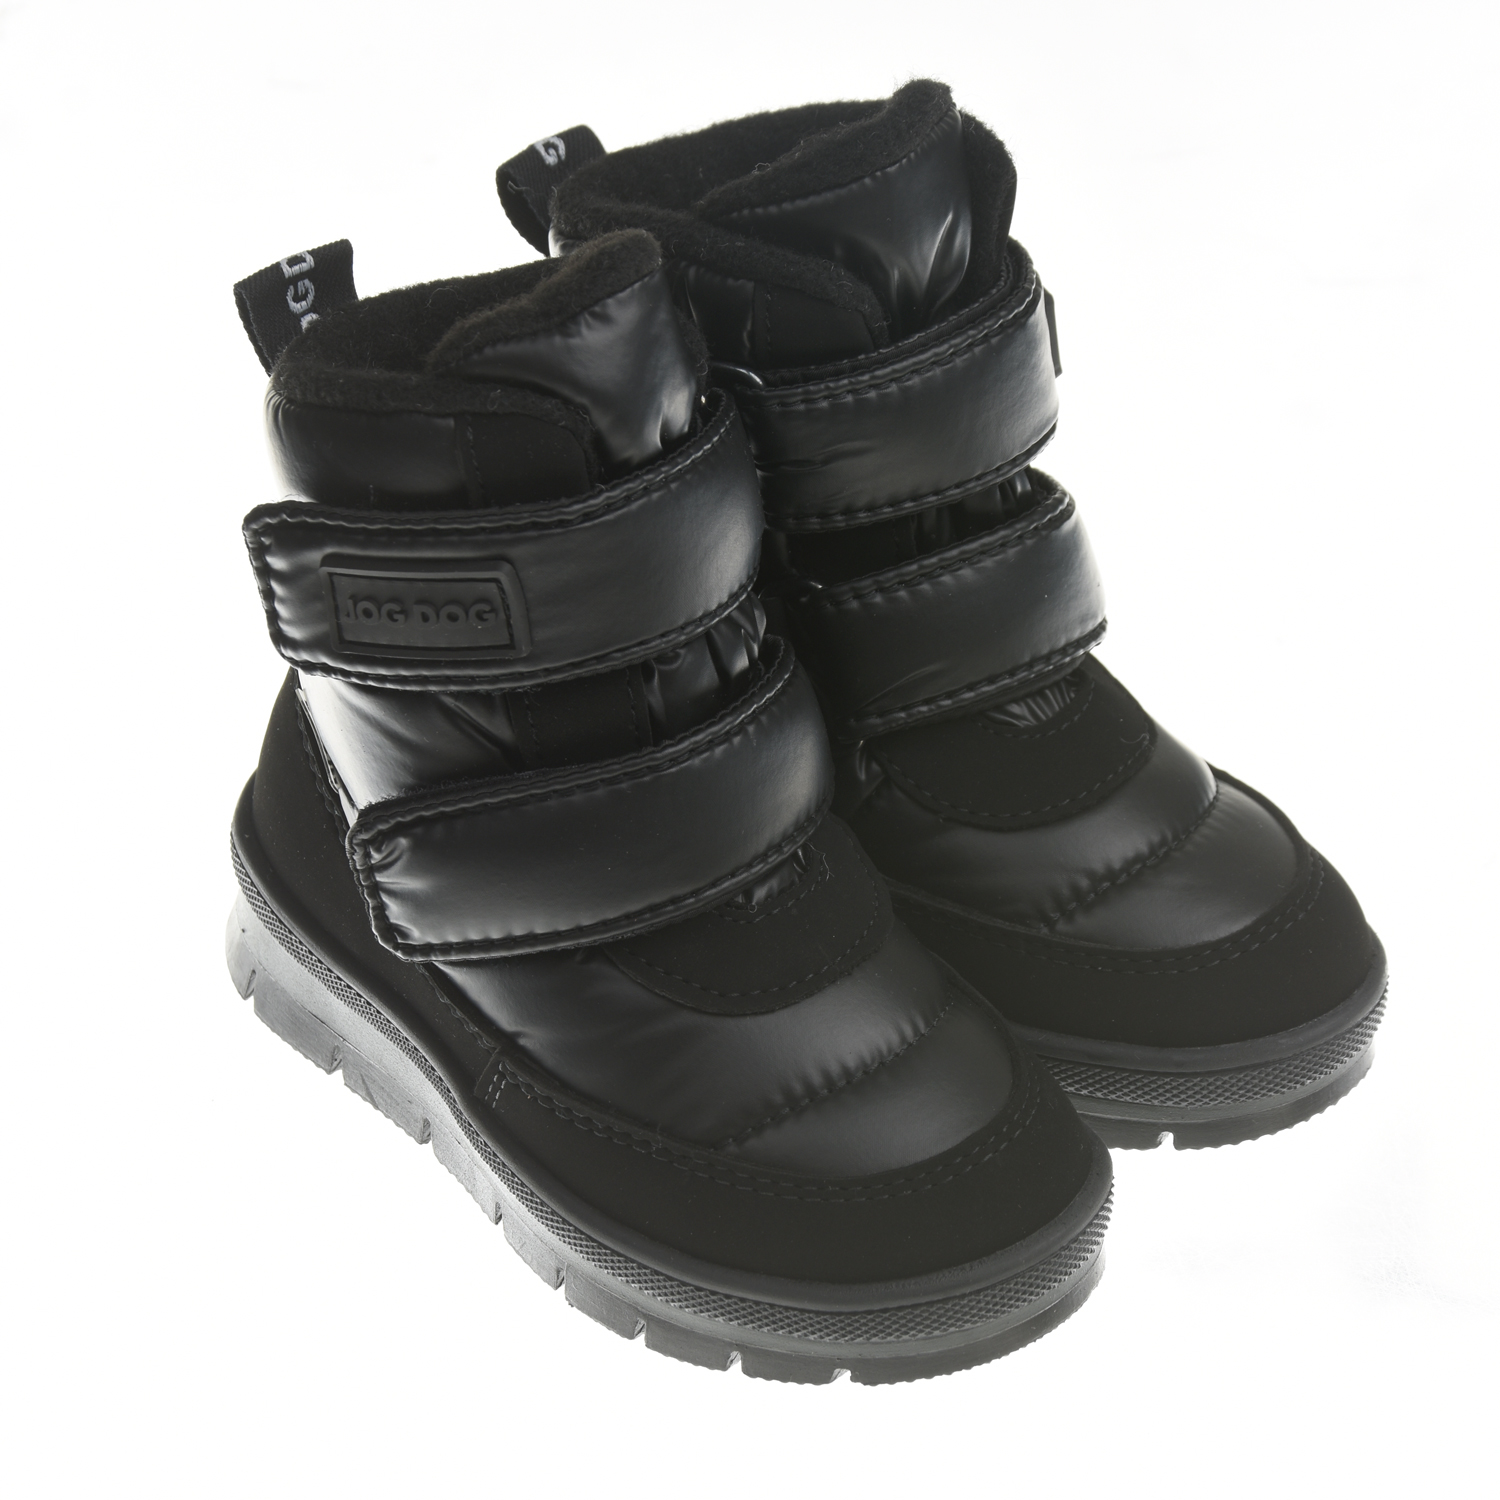 Черные мембранные сапоги с двумя липучками Jog Dog детские, размер 24, цвет черный